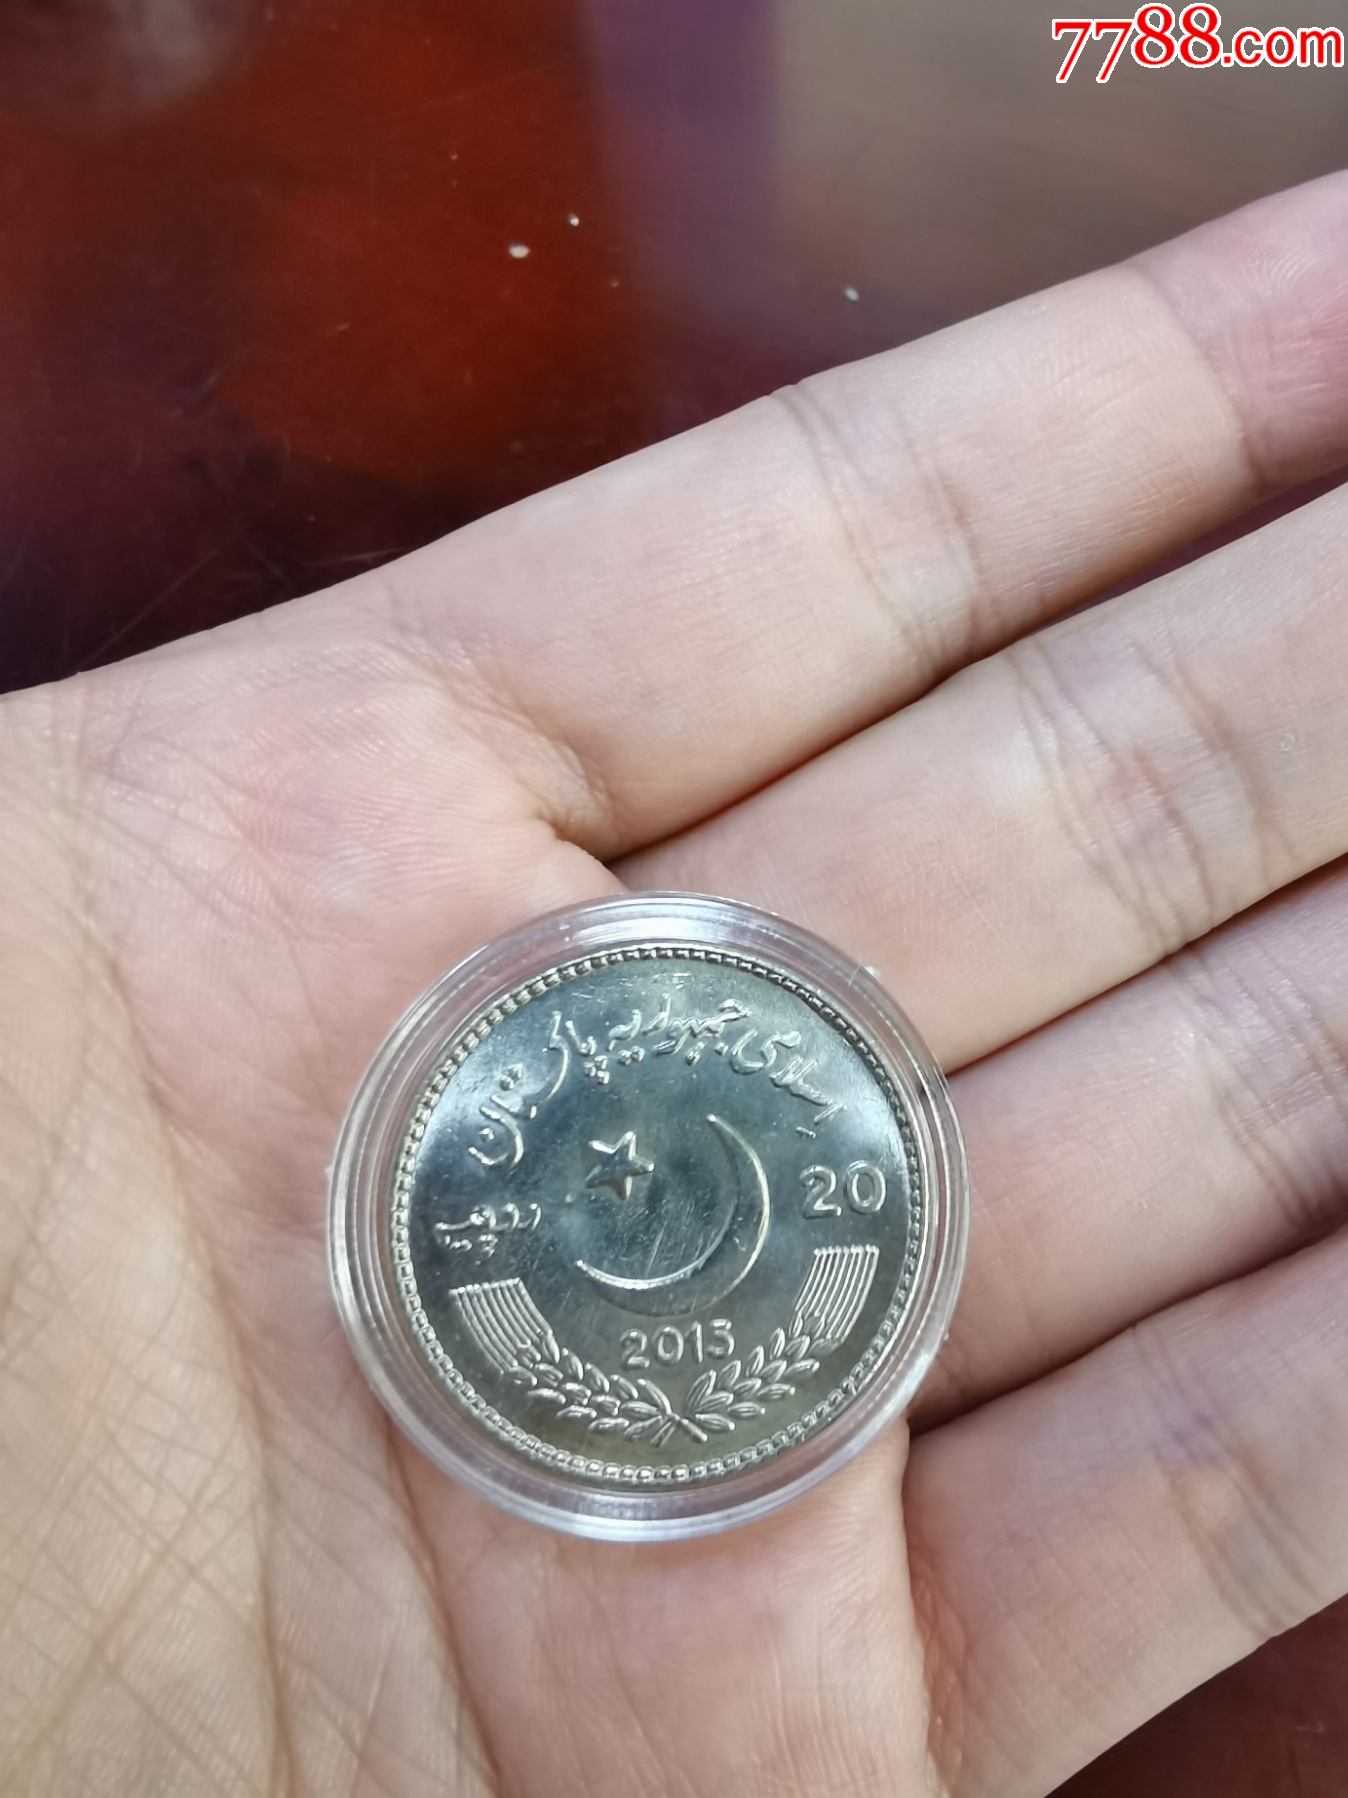 巴基斯坦纪念币图片